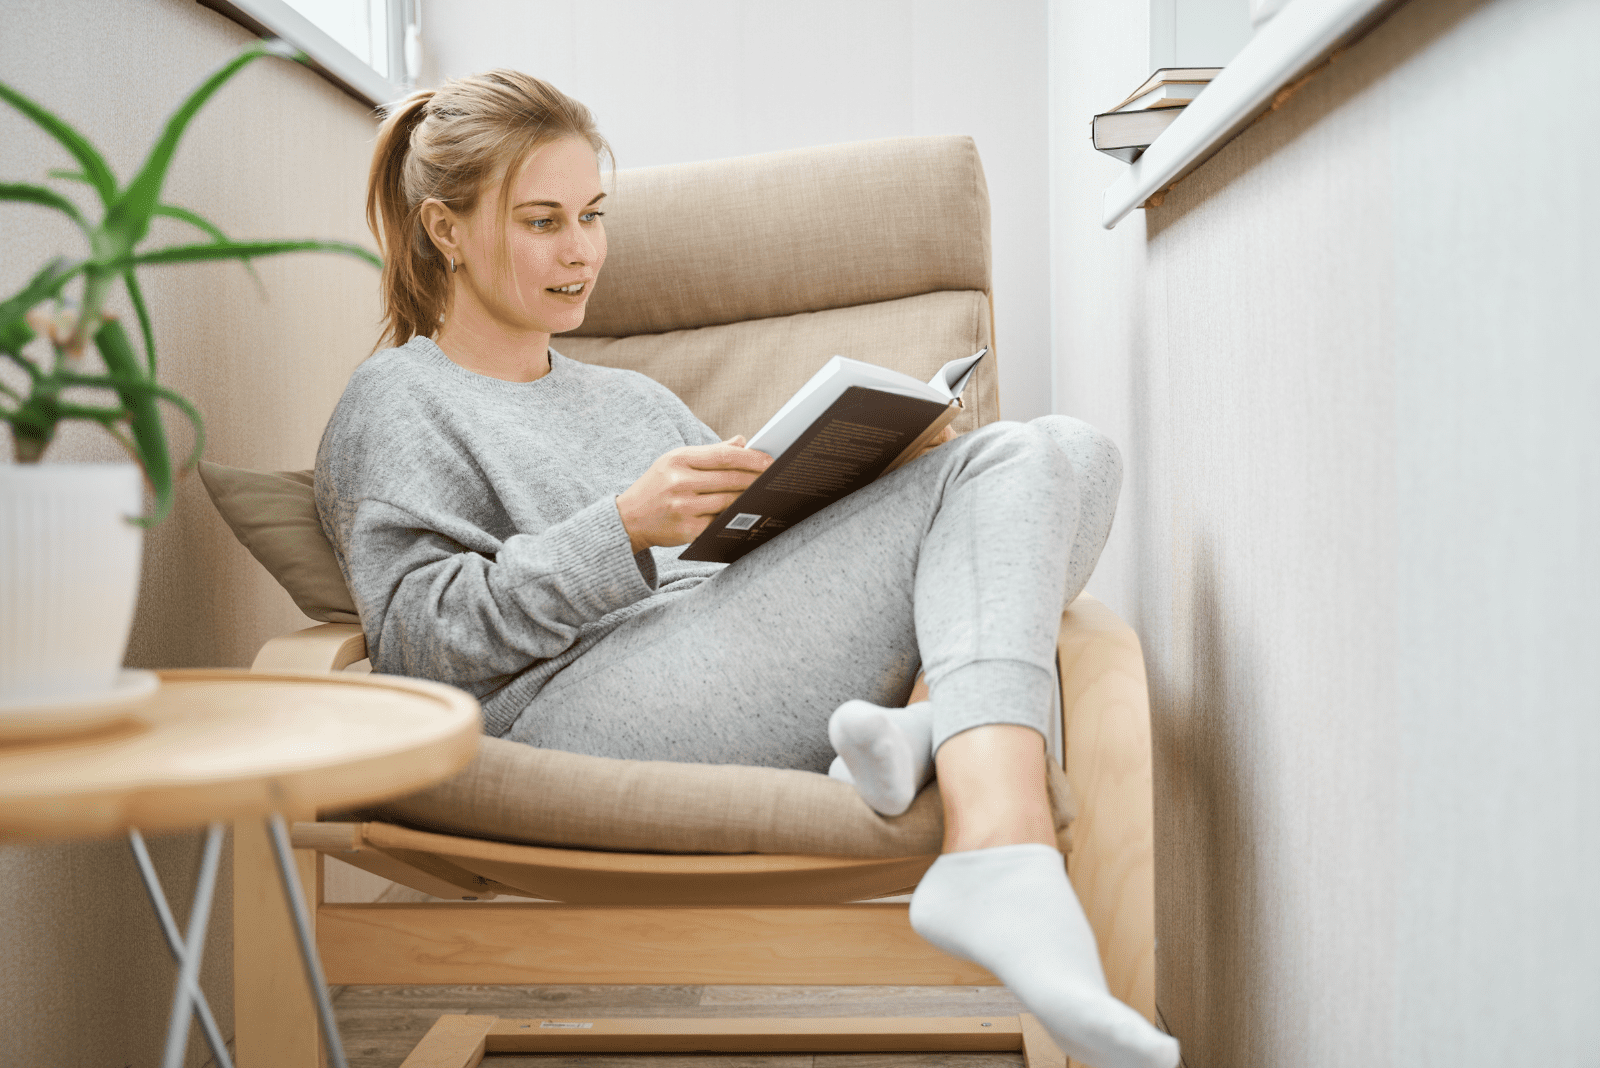 una bella donna con i capelli legati è seduta su una poltrona e sta leggendo un libro